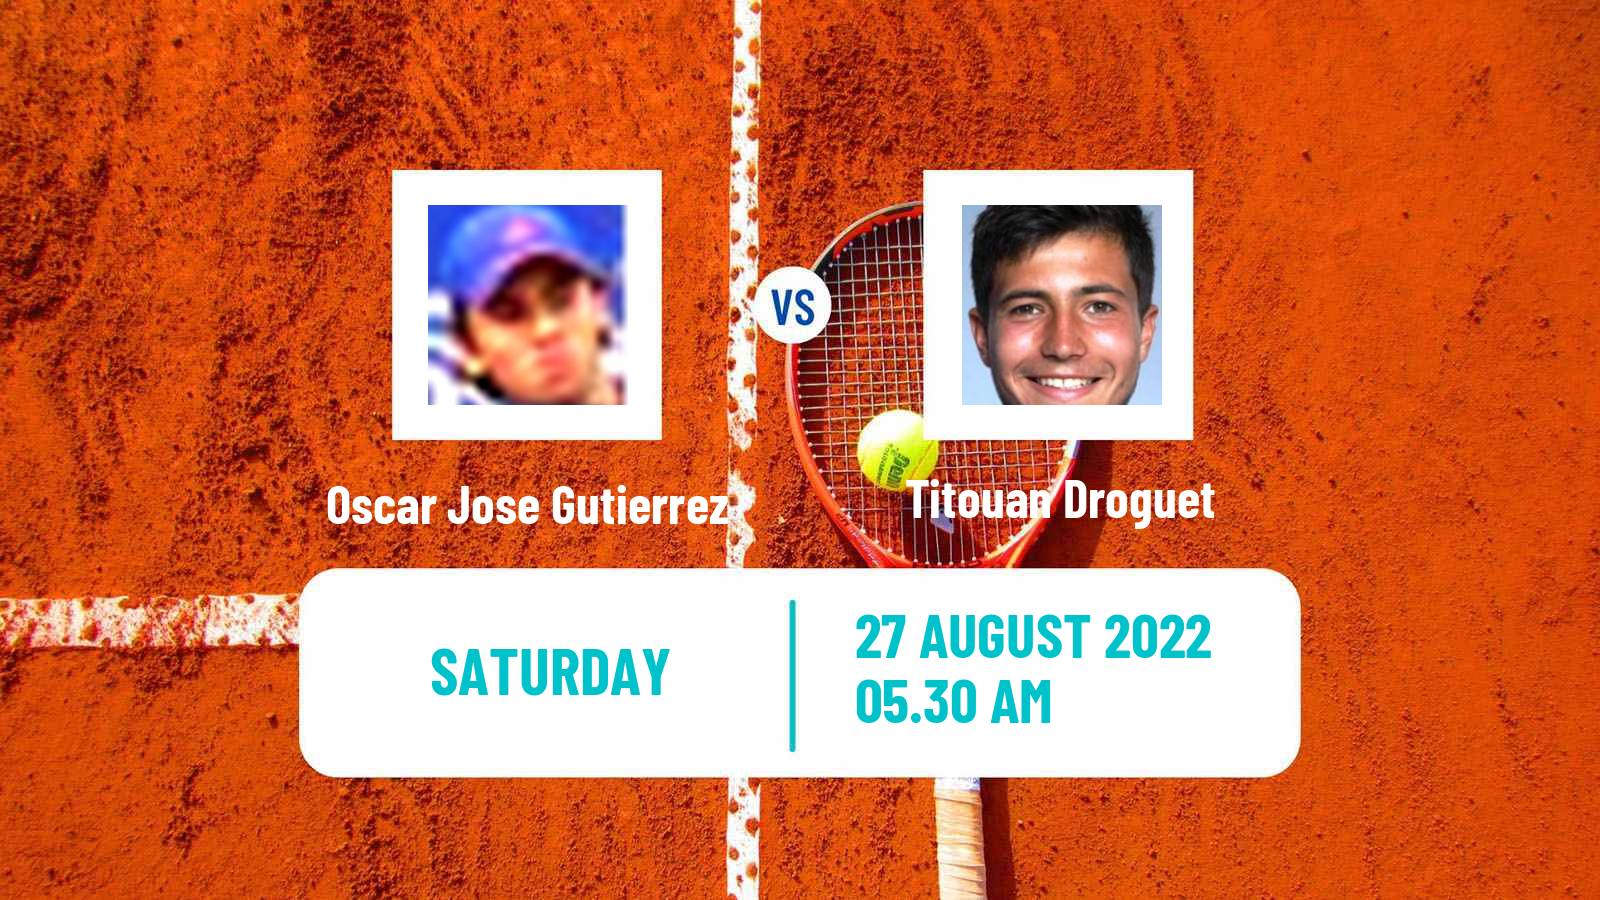 Tennis ITF Tournaments Oscar Jose Gutierrez - Titouan Droguet